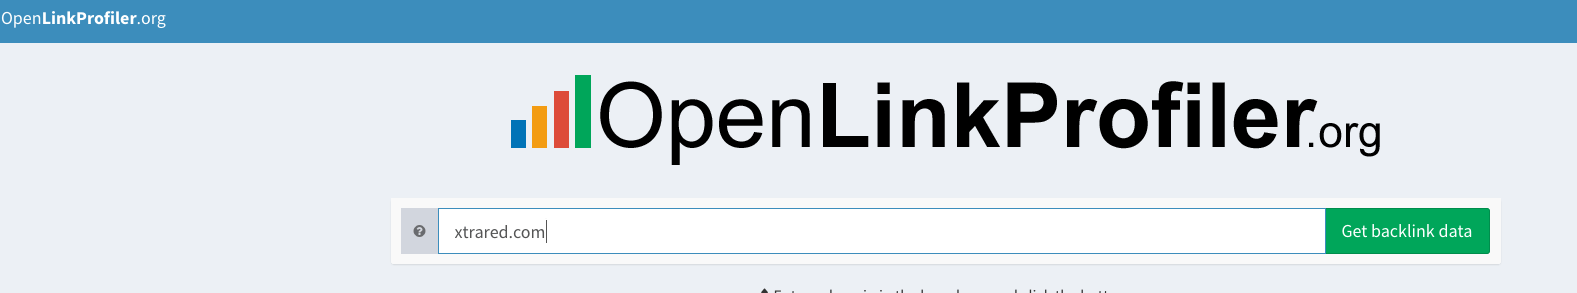 OpenLinkProfiler.org